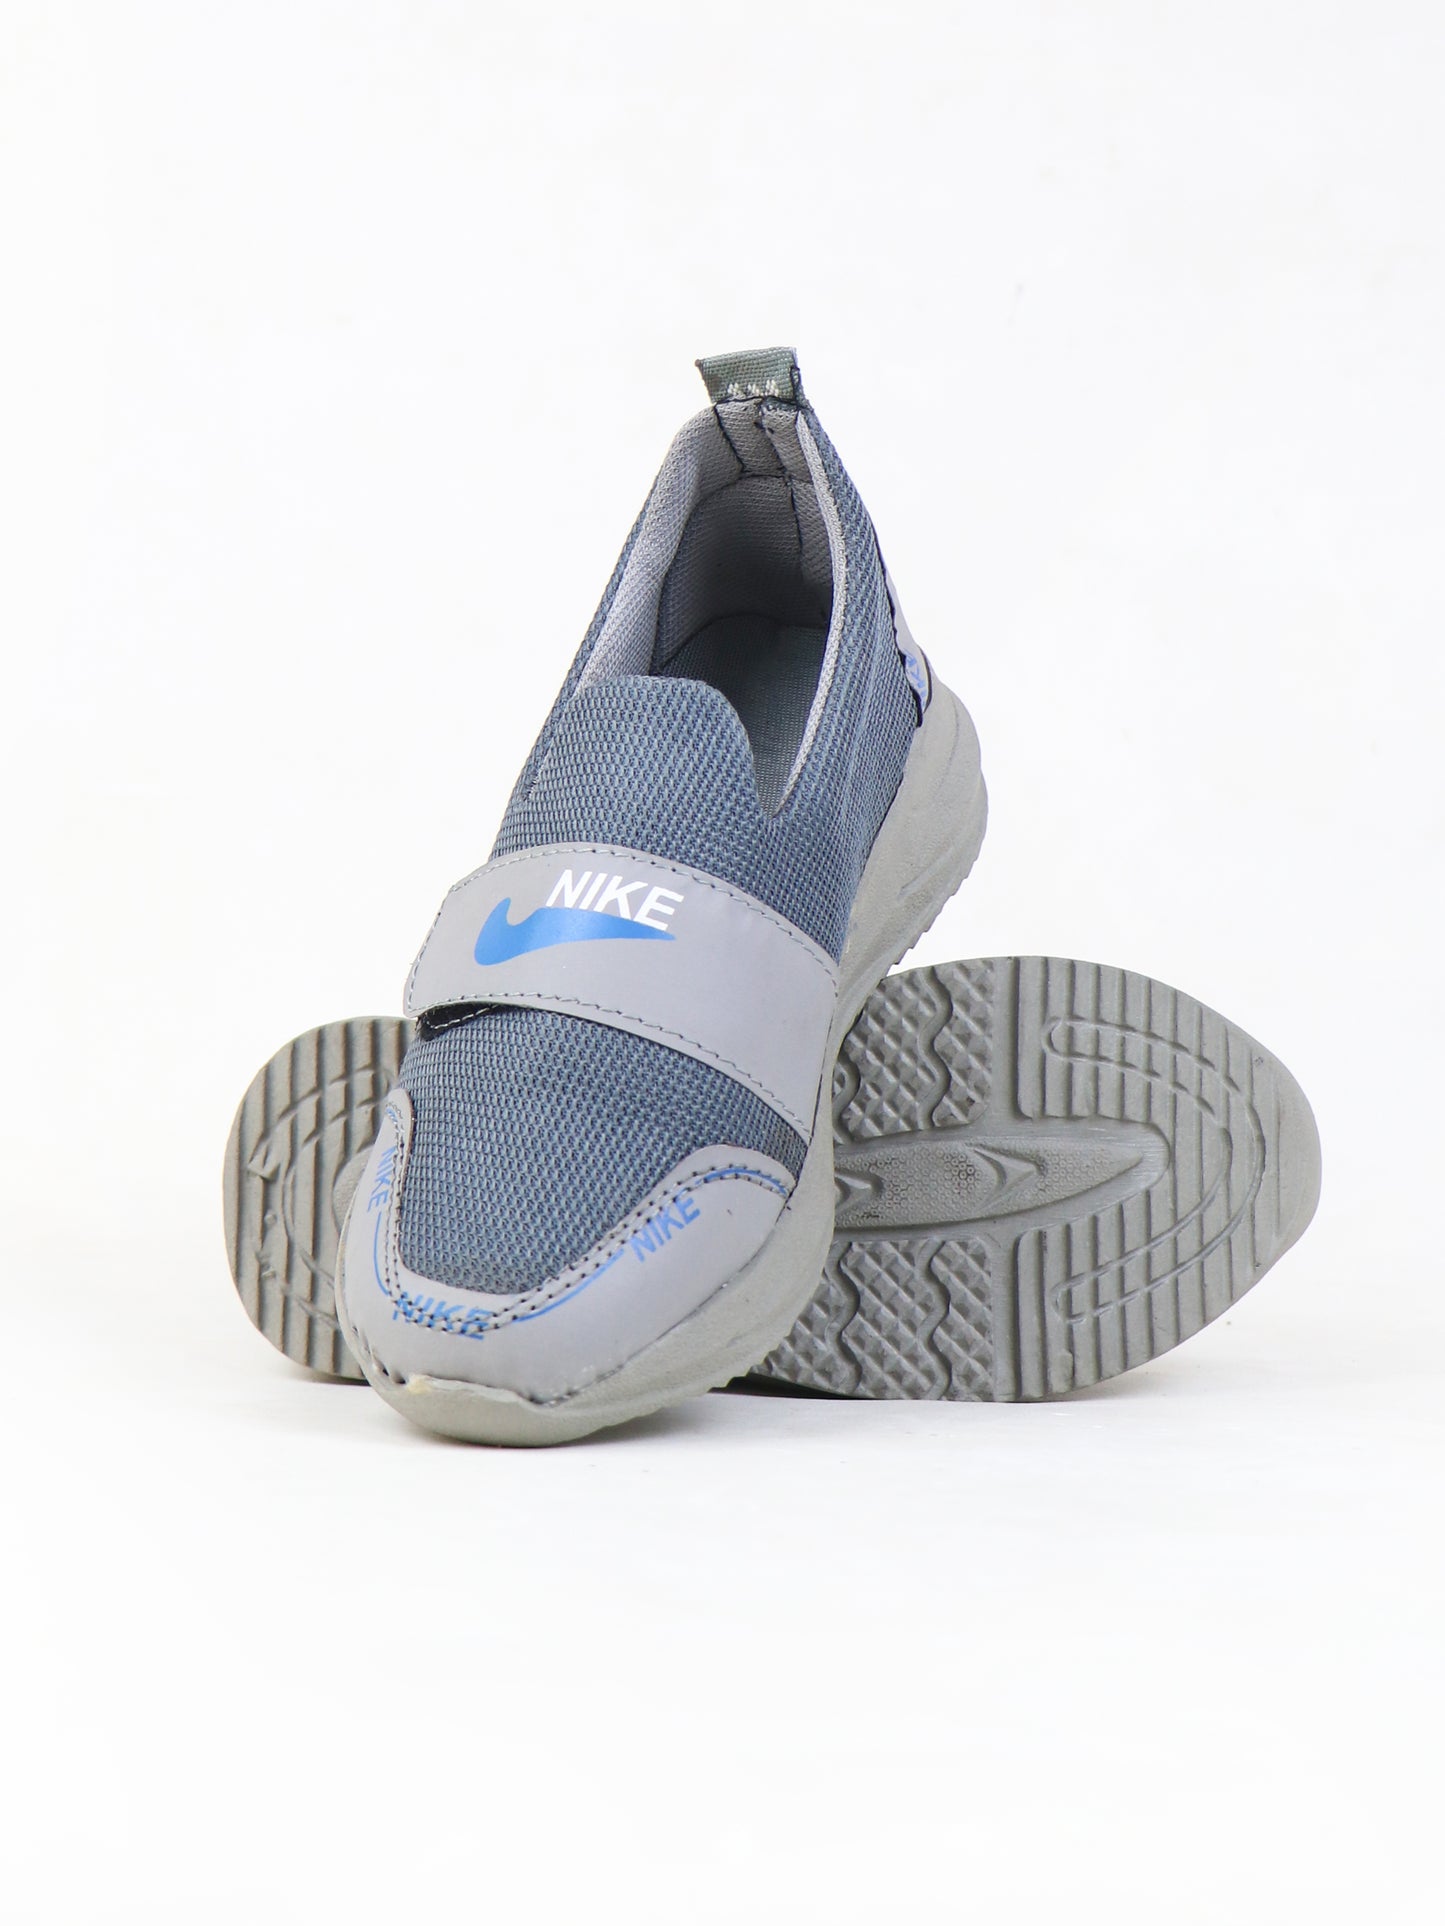 BJ21 Boys Shoes 8Yrs - 12Yrs NK Grey